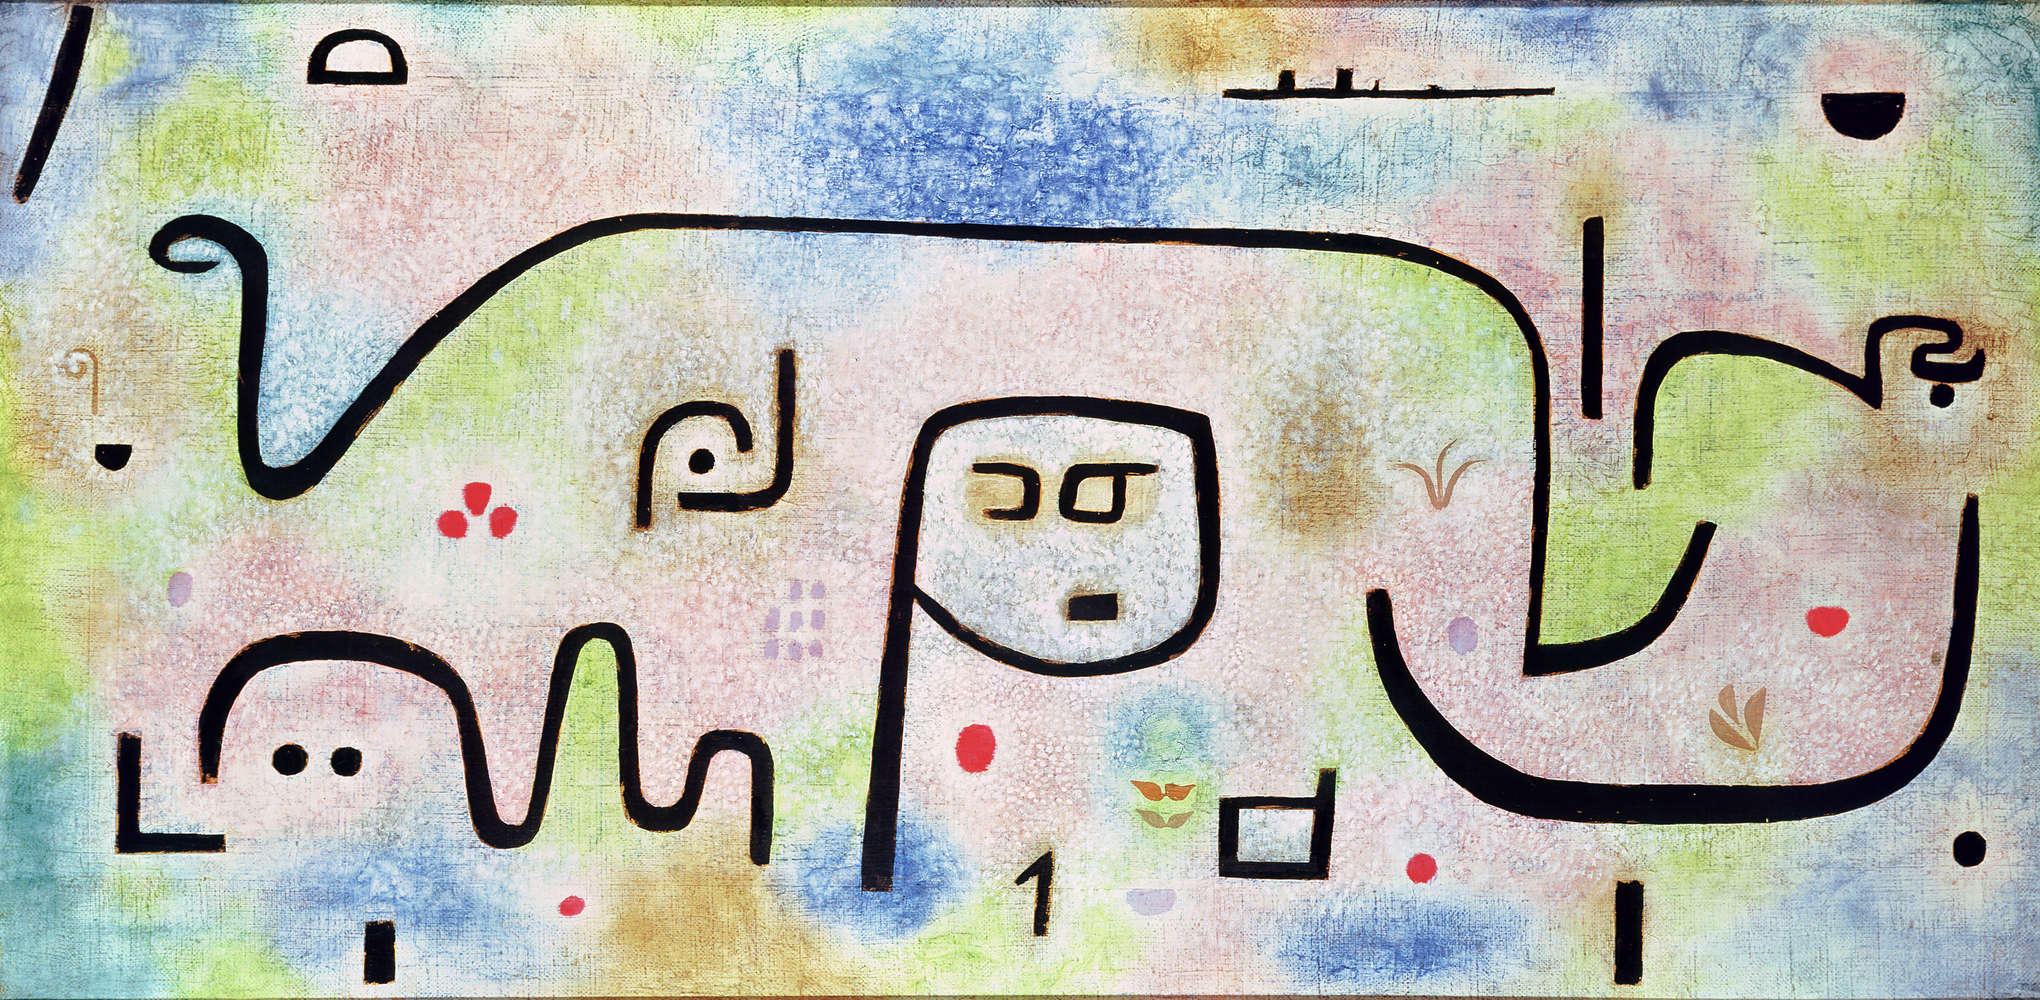             Fotomurali "Insula Dulcamara" di Paul Klee
        